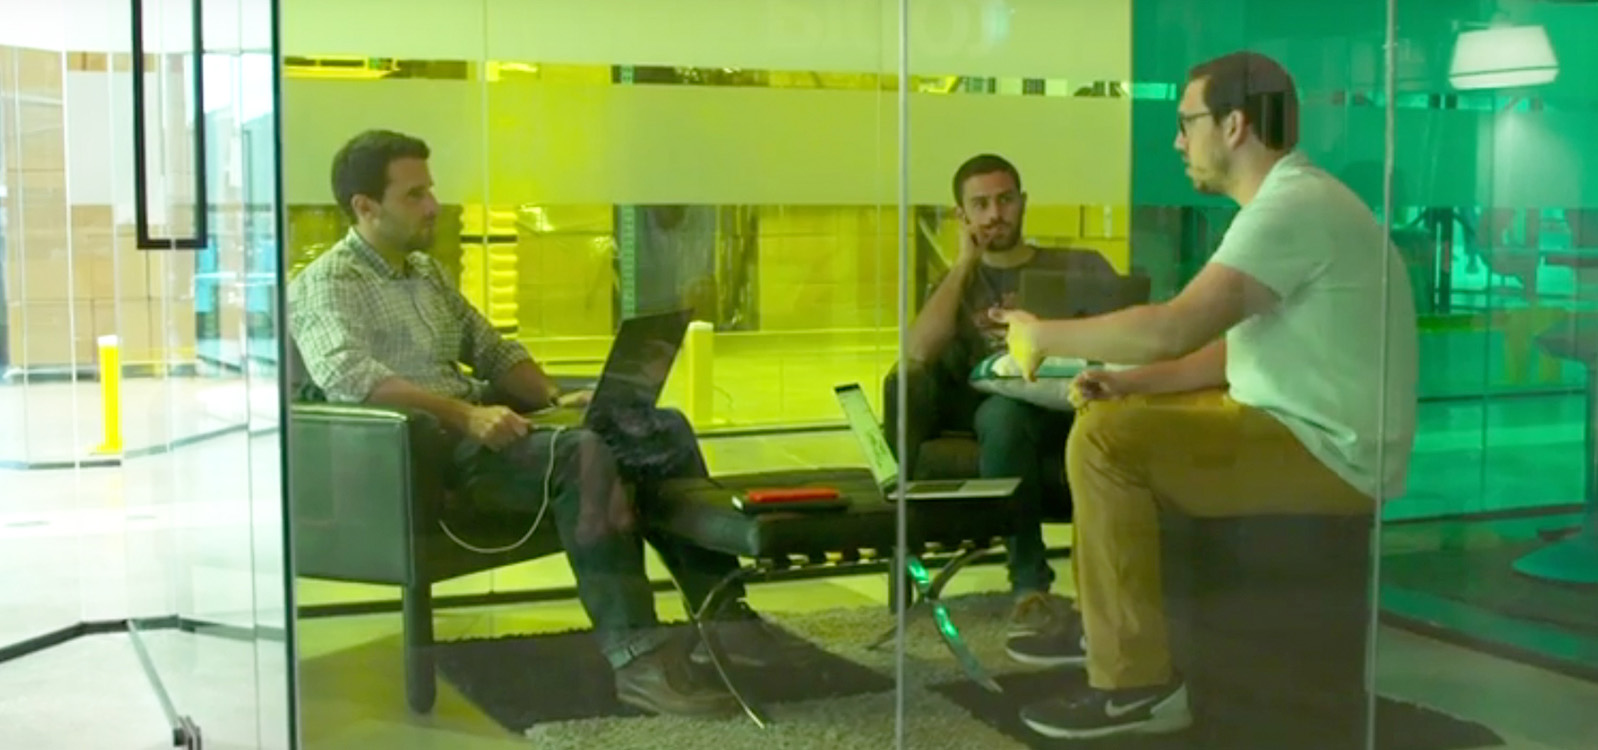 Drei Männer in einem kleinen Besprechungsraum mit Glaswänden